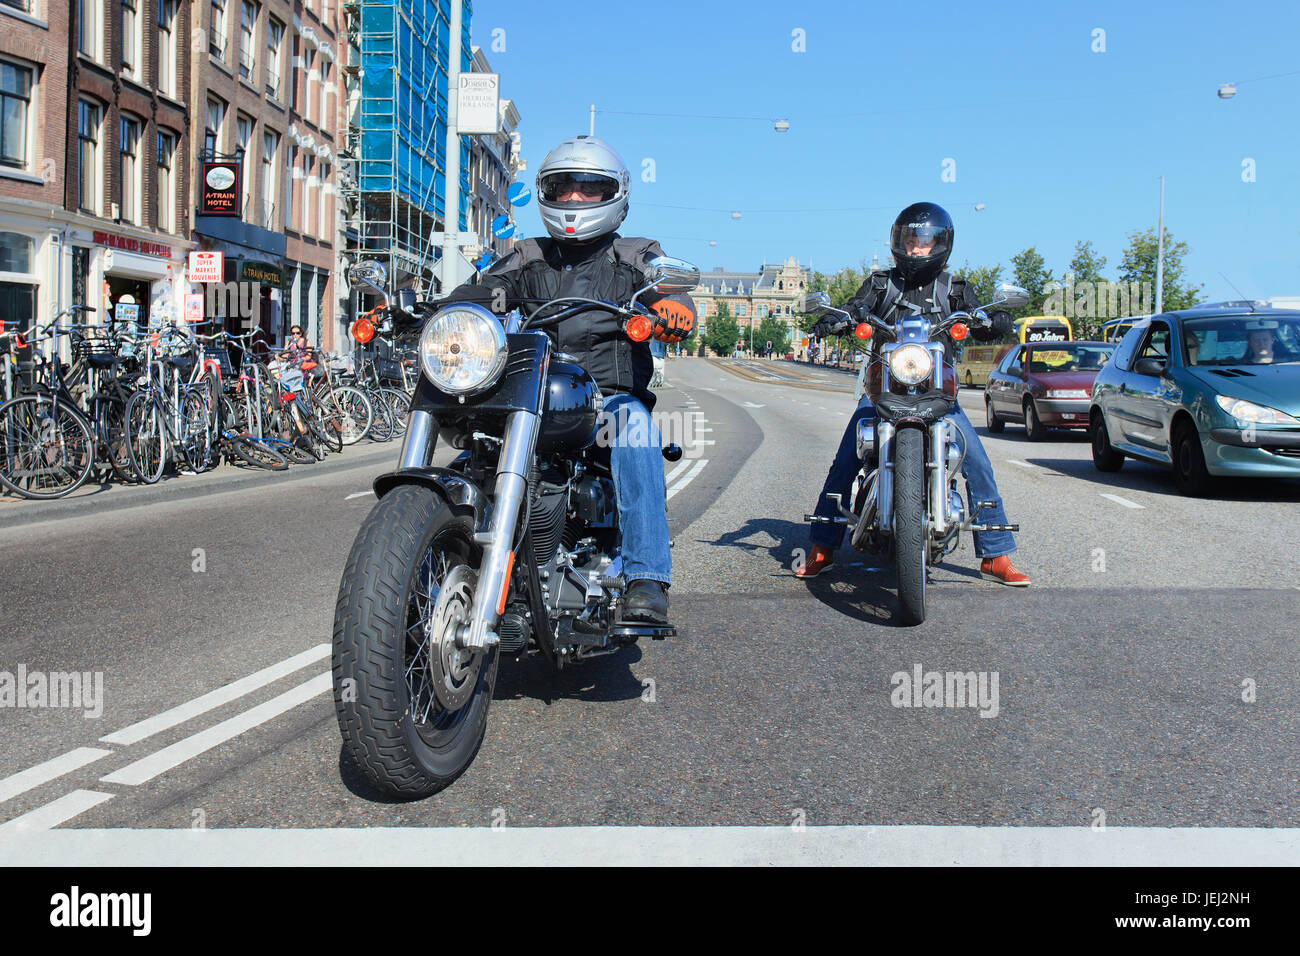 AMSTERDAM-AGO. 19, 2012. Harley Davidson ad Amsterdam. L'azienda vende motociclette pesanti (oltre 750 cc) dotate di motori V-twin. Foto Stock